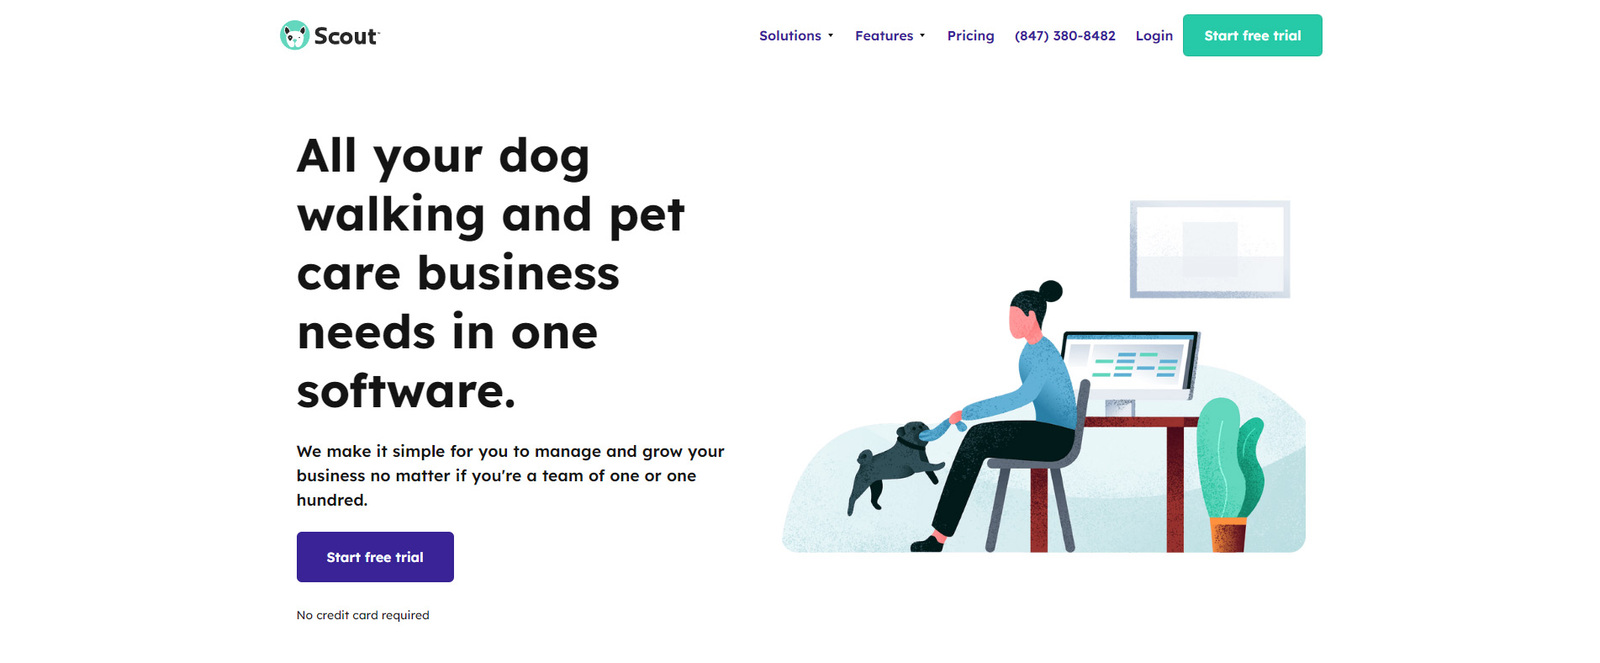 Изображение Scout, передового программного обеспечения для выгула домашних животных.